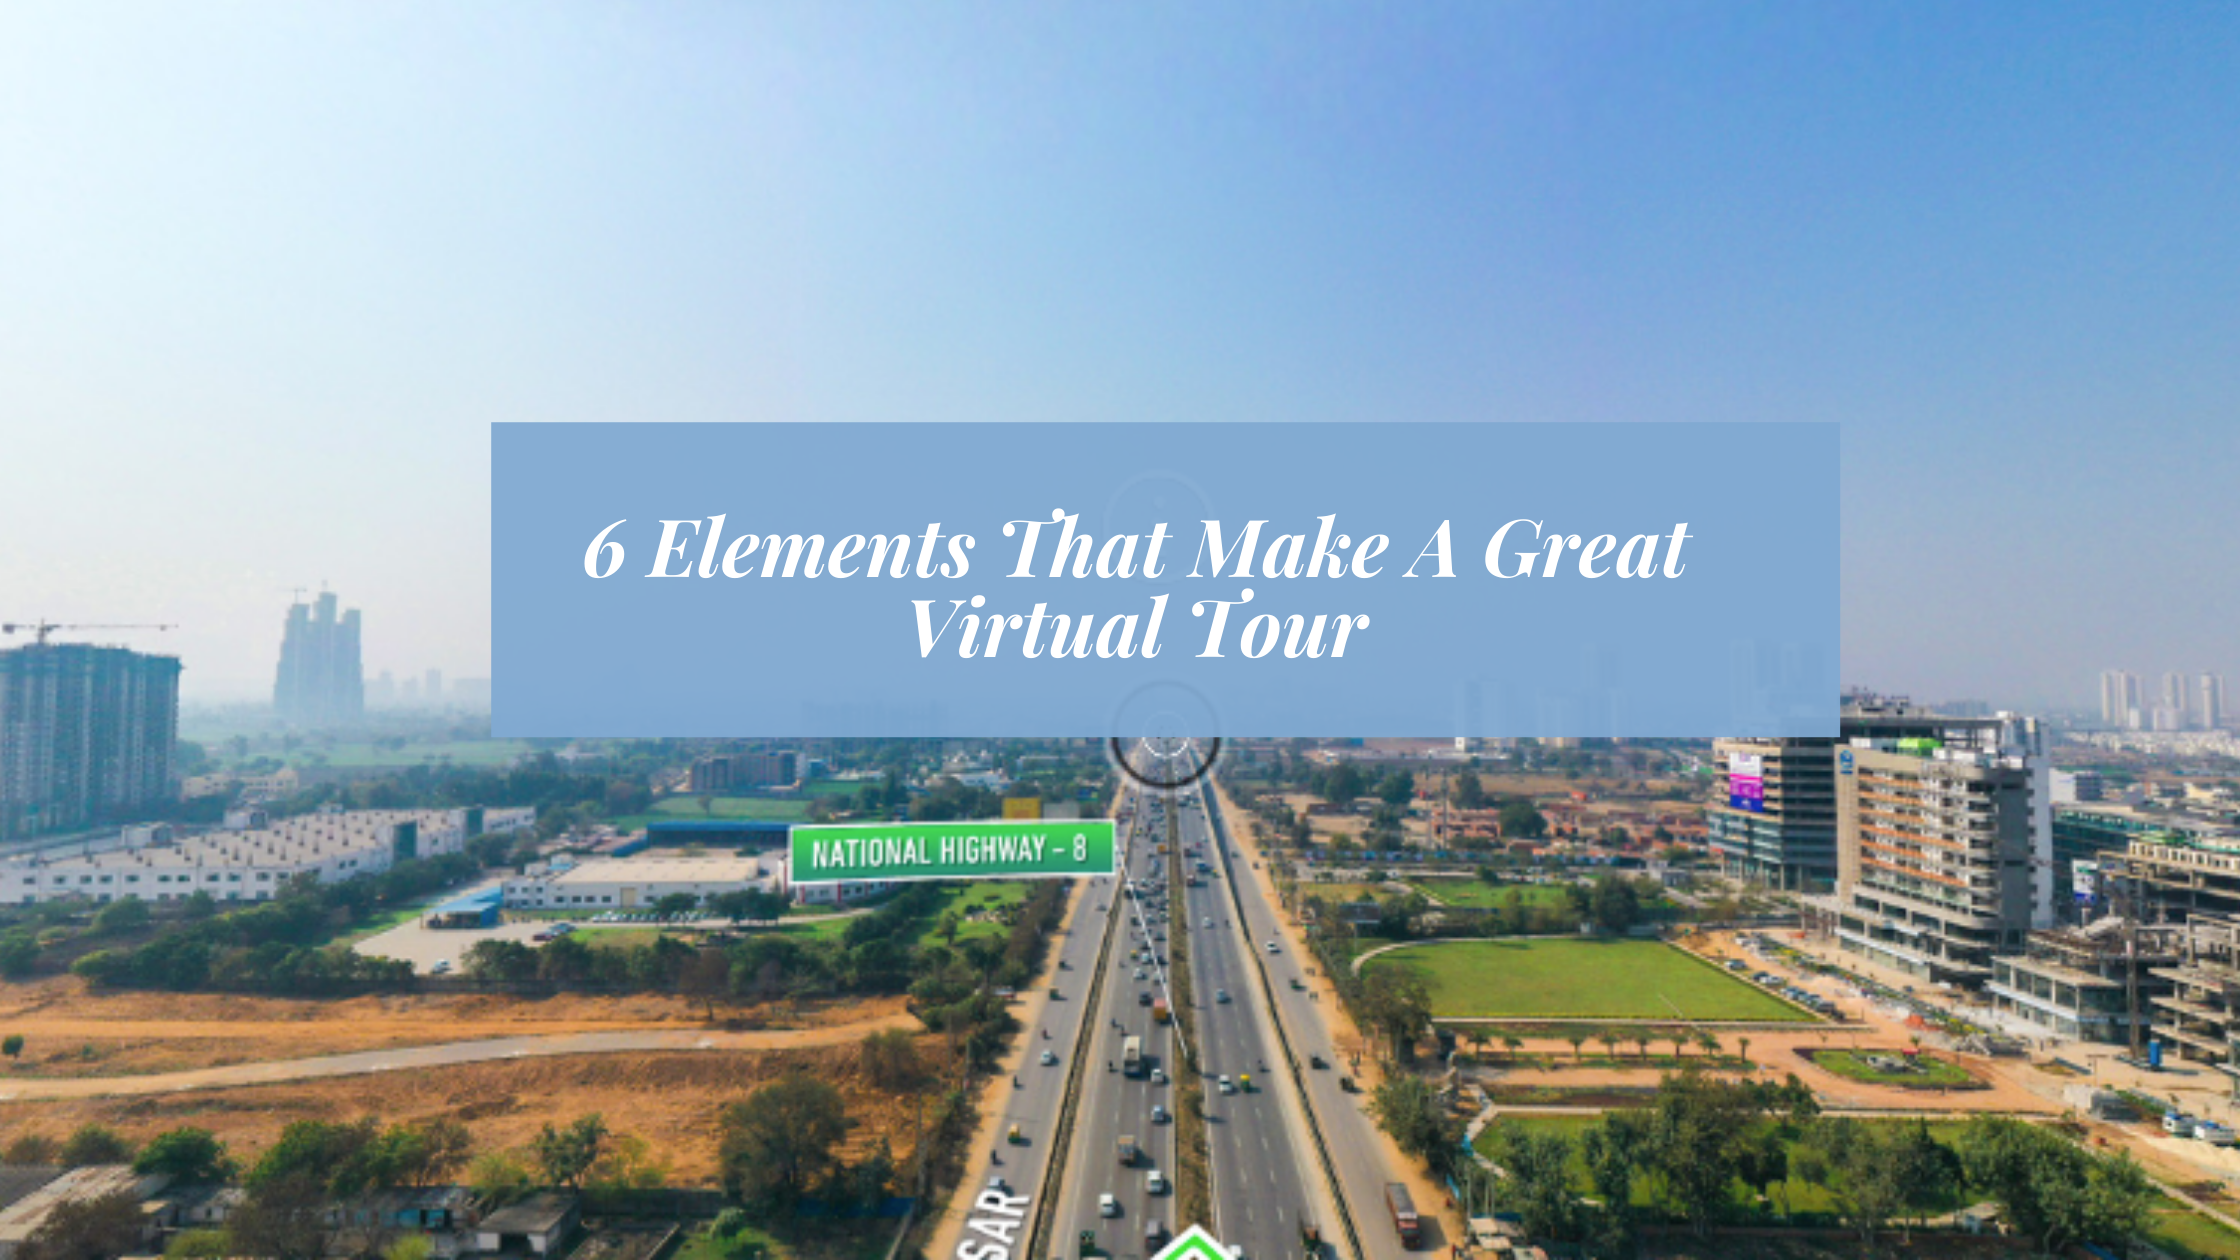 360 Virtual tours